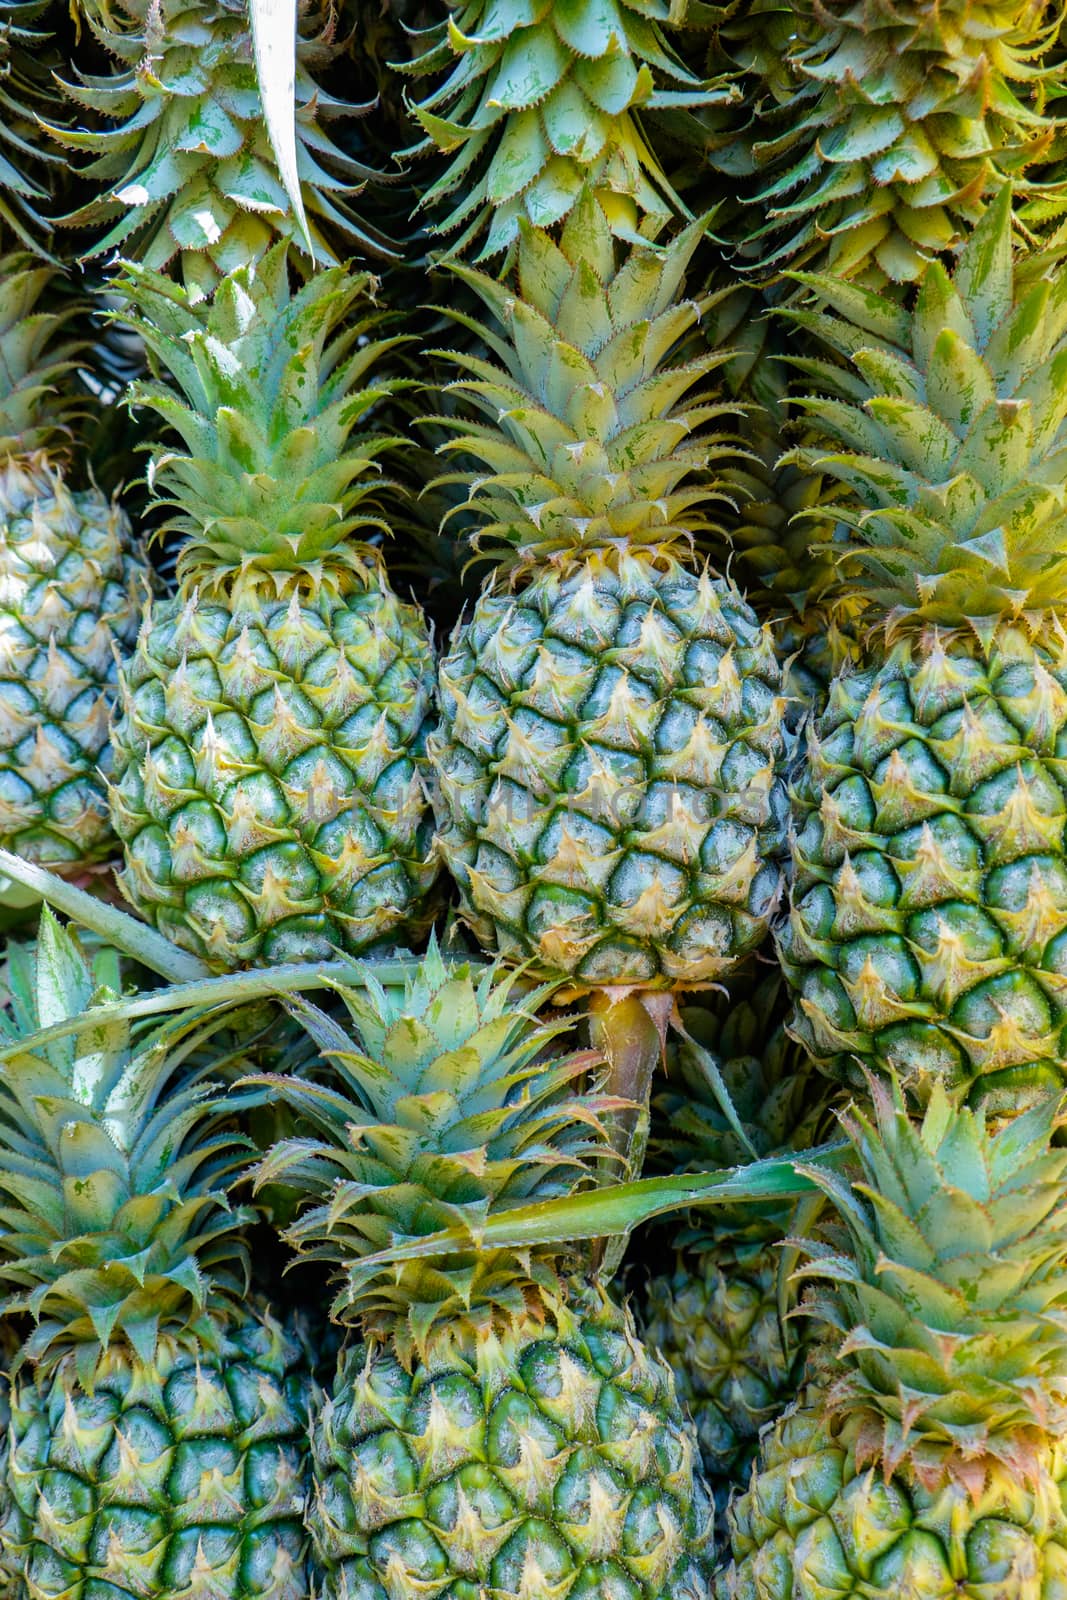 pineapple in market by antpkr